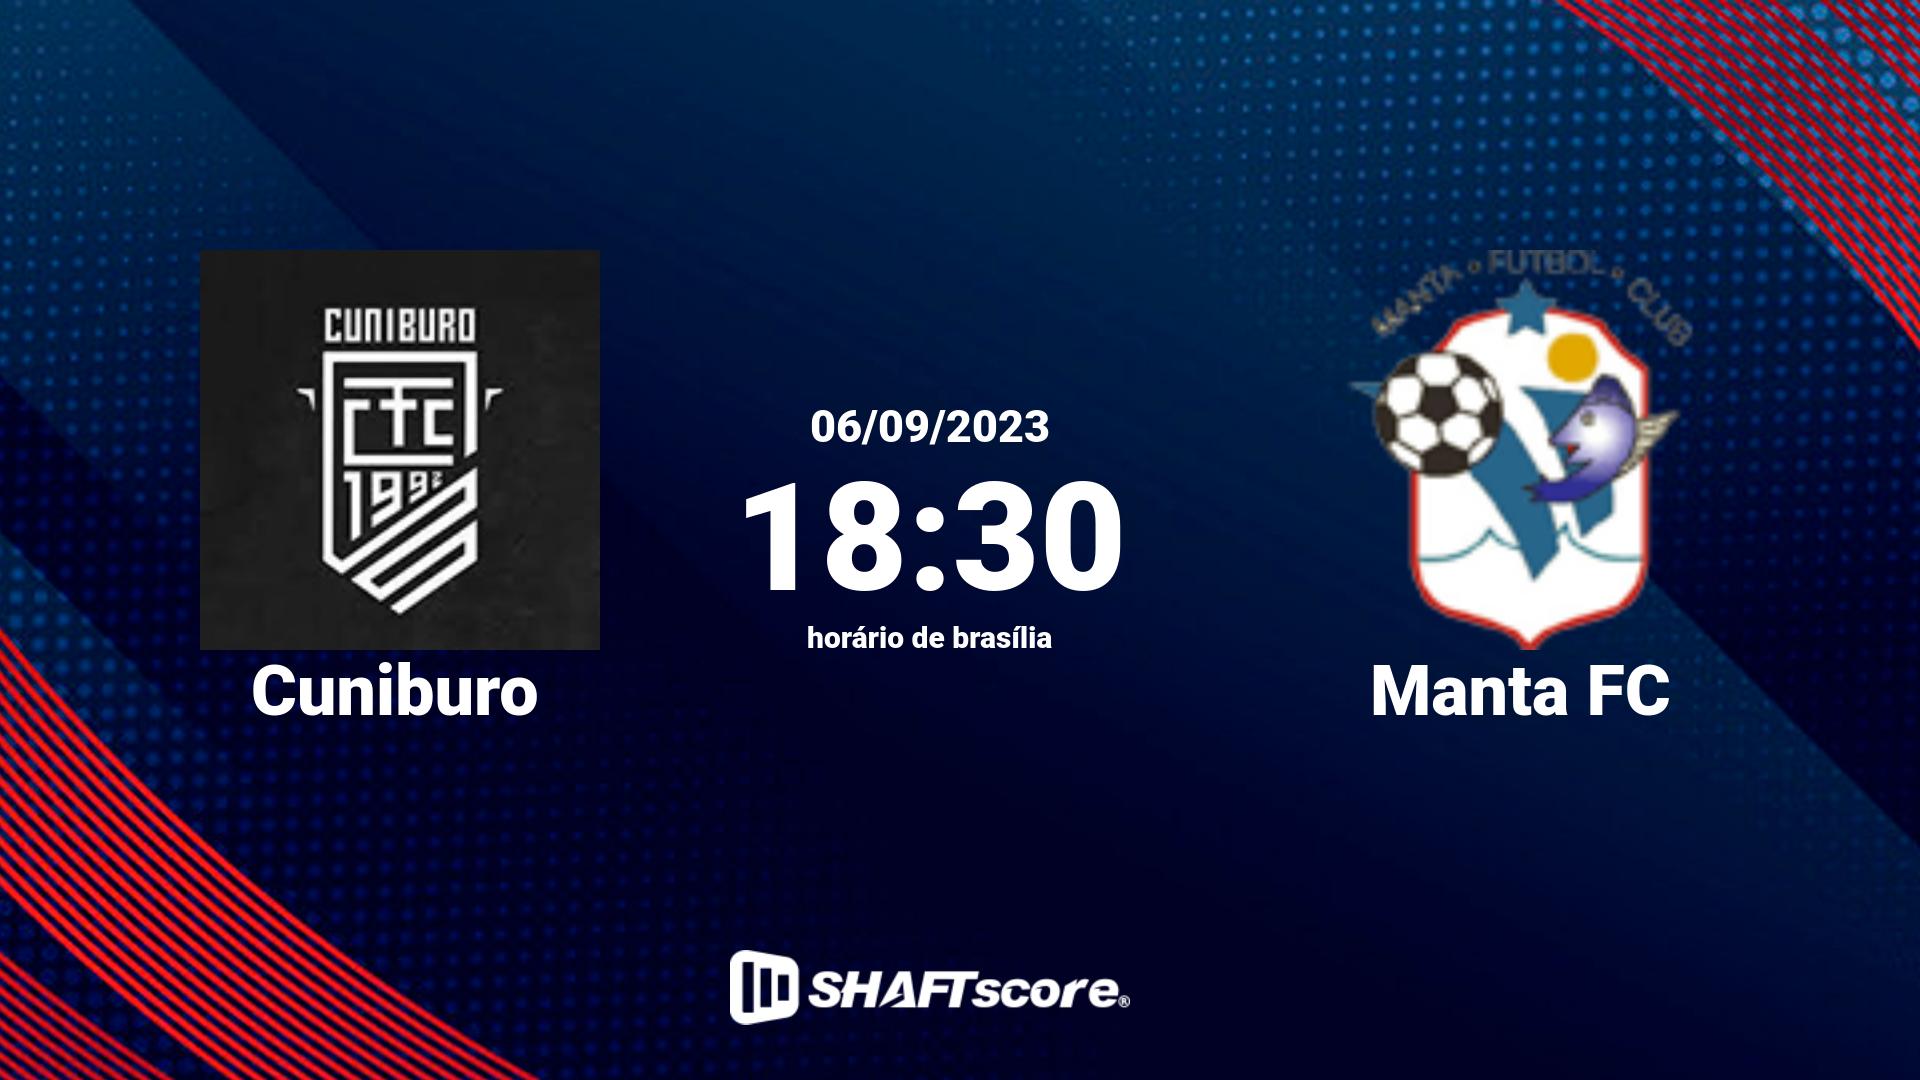 Estatísticas do jogo Cuniburo vs Manta FC 06.09 18:30